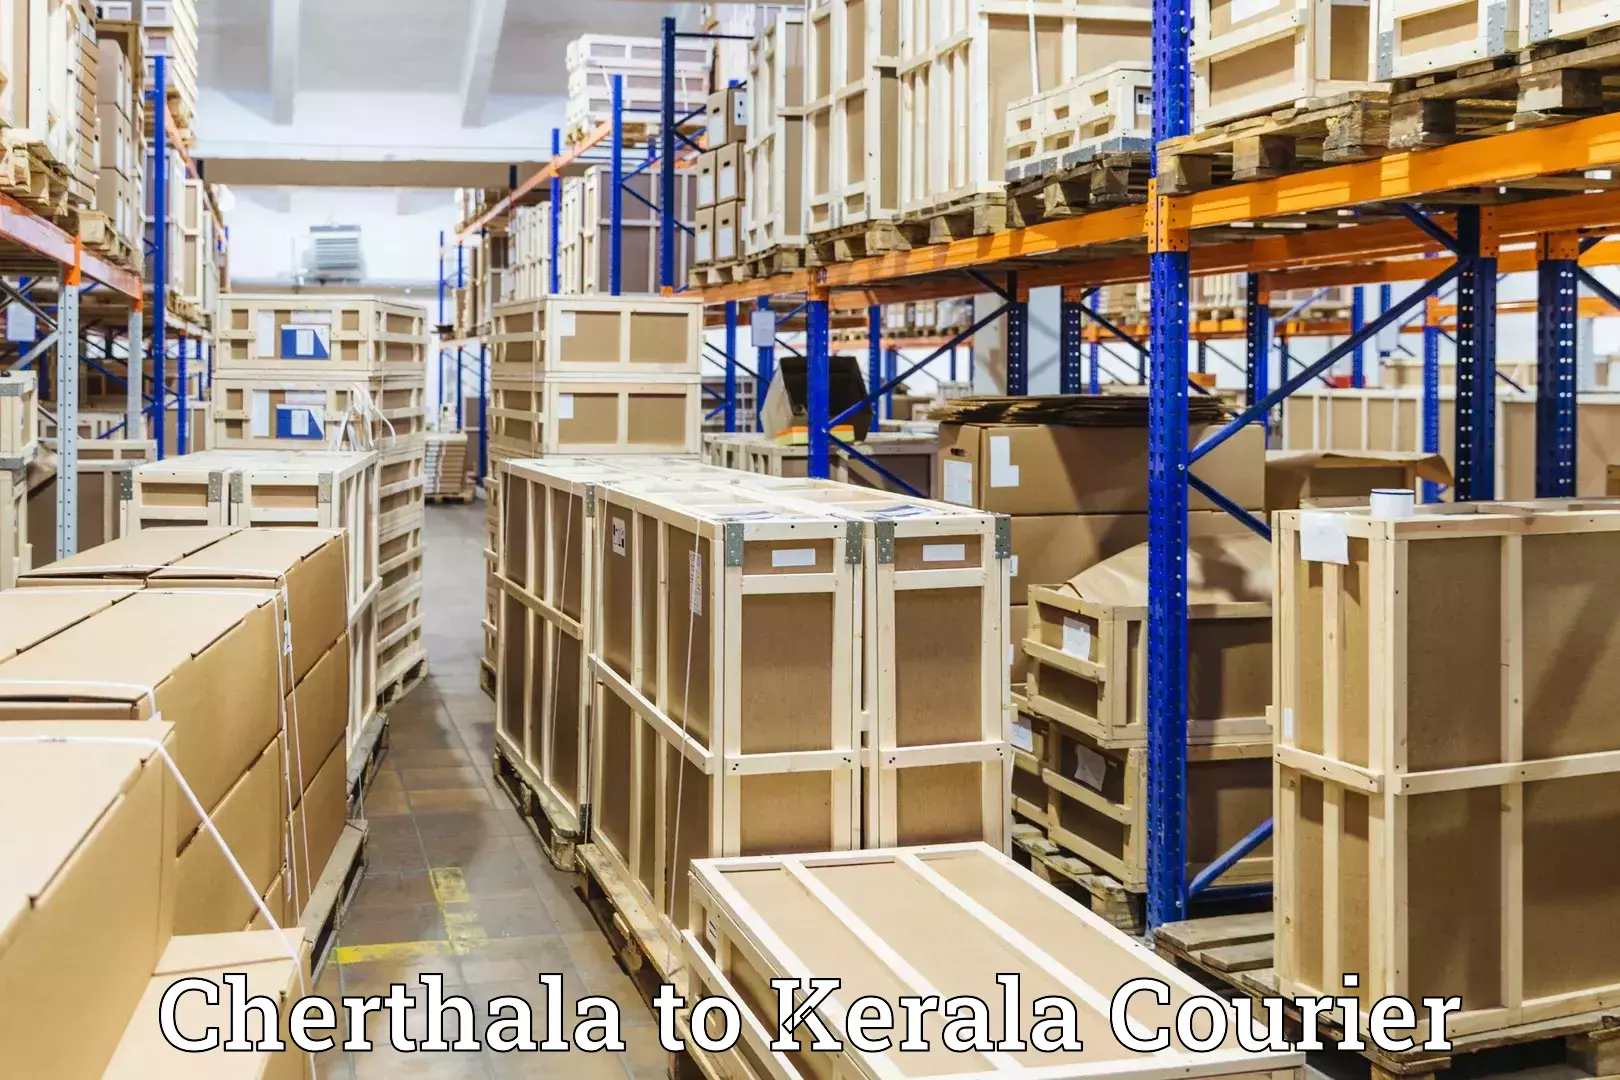 Baggage courier rates calculator Cherthala to Thiruvananthapuram